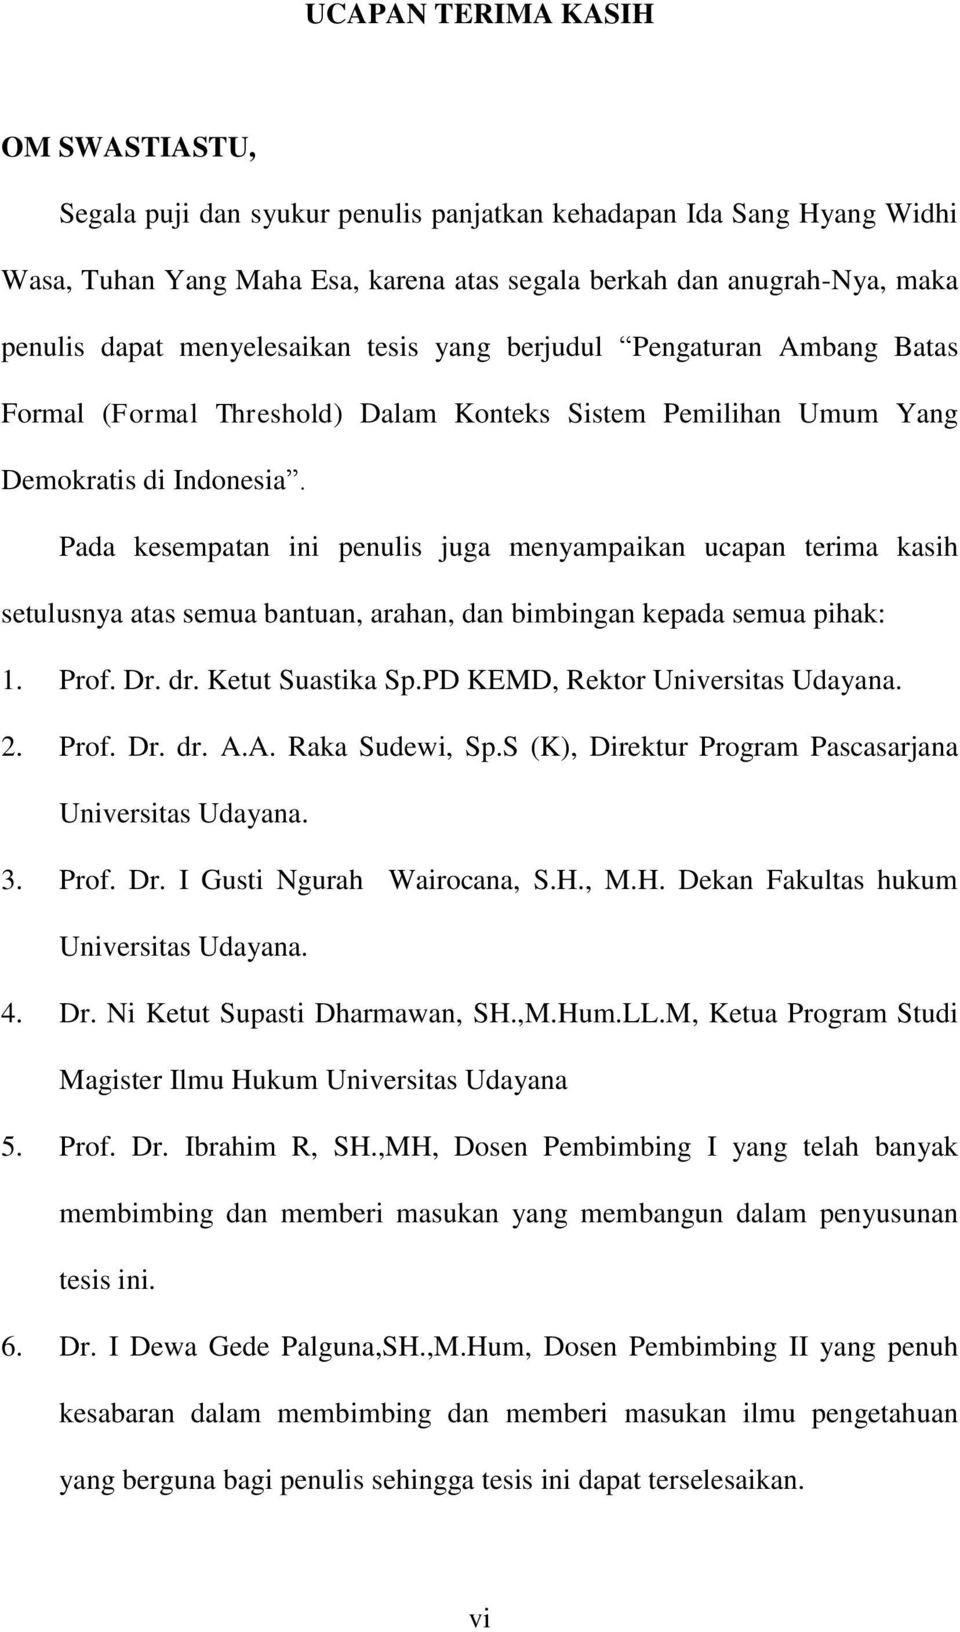 Pada kesempatan ini penulis juga menyampaikan ucapan terima kasih setulusnya atas semua bantuan, arahan, dan bimbingan kepada semua pihak: 1. Prof. Dr. dr. Ketut Suastika Sp.